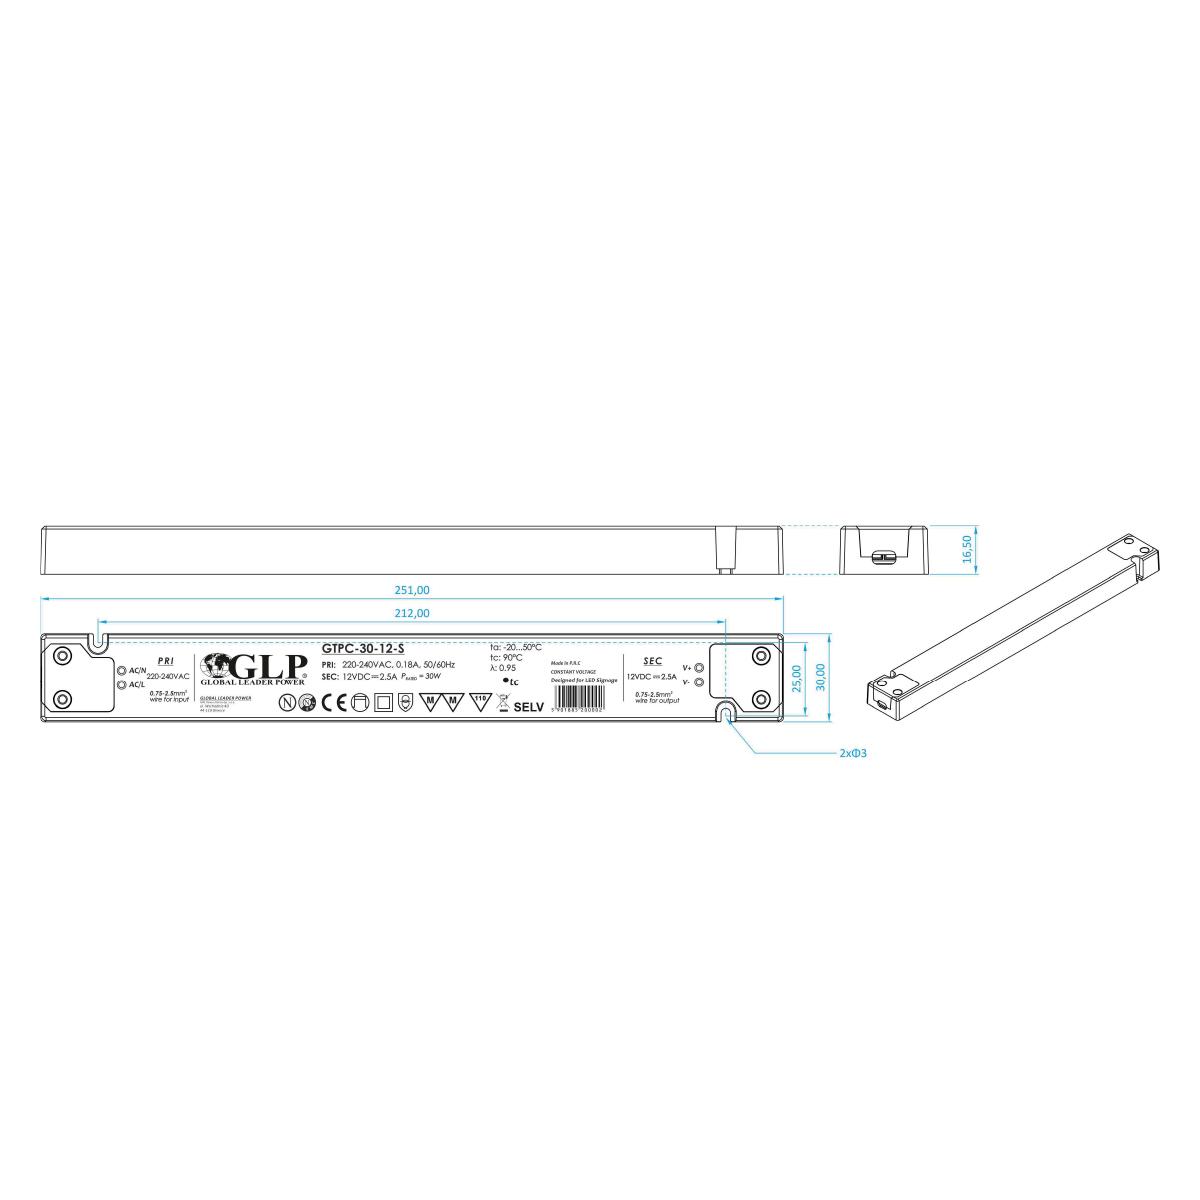 GLP GTPC-30-24-S LED Netzteil extrem flach für Möbeleinbau 30W 24V 1.25A IP20 Schaltnetzteil CV